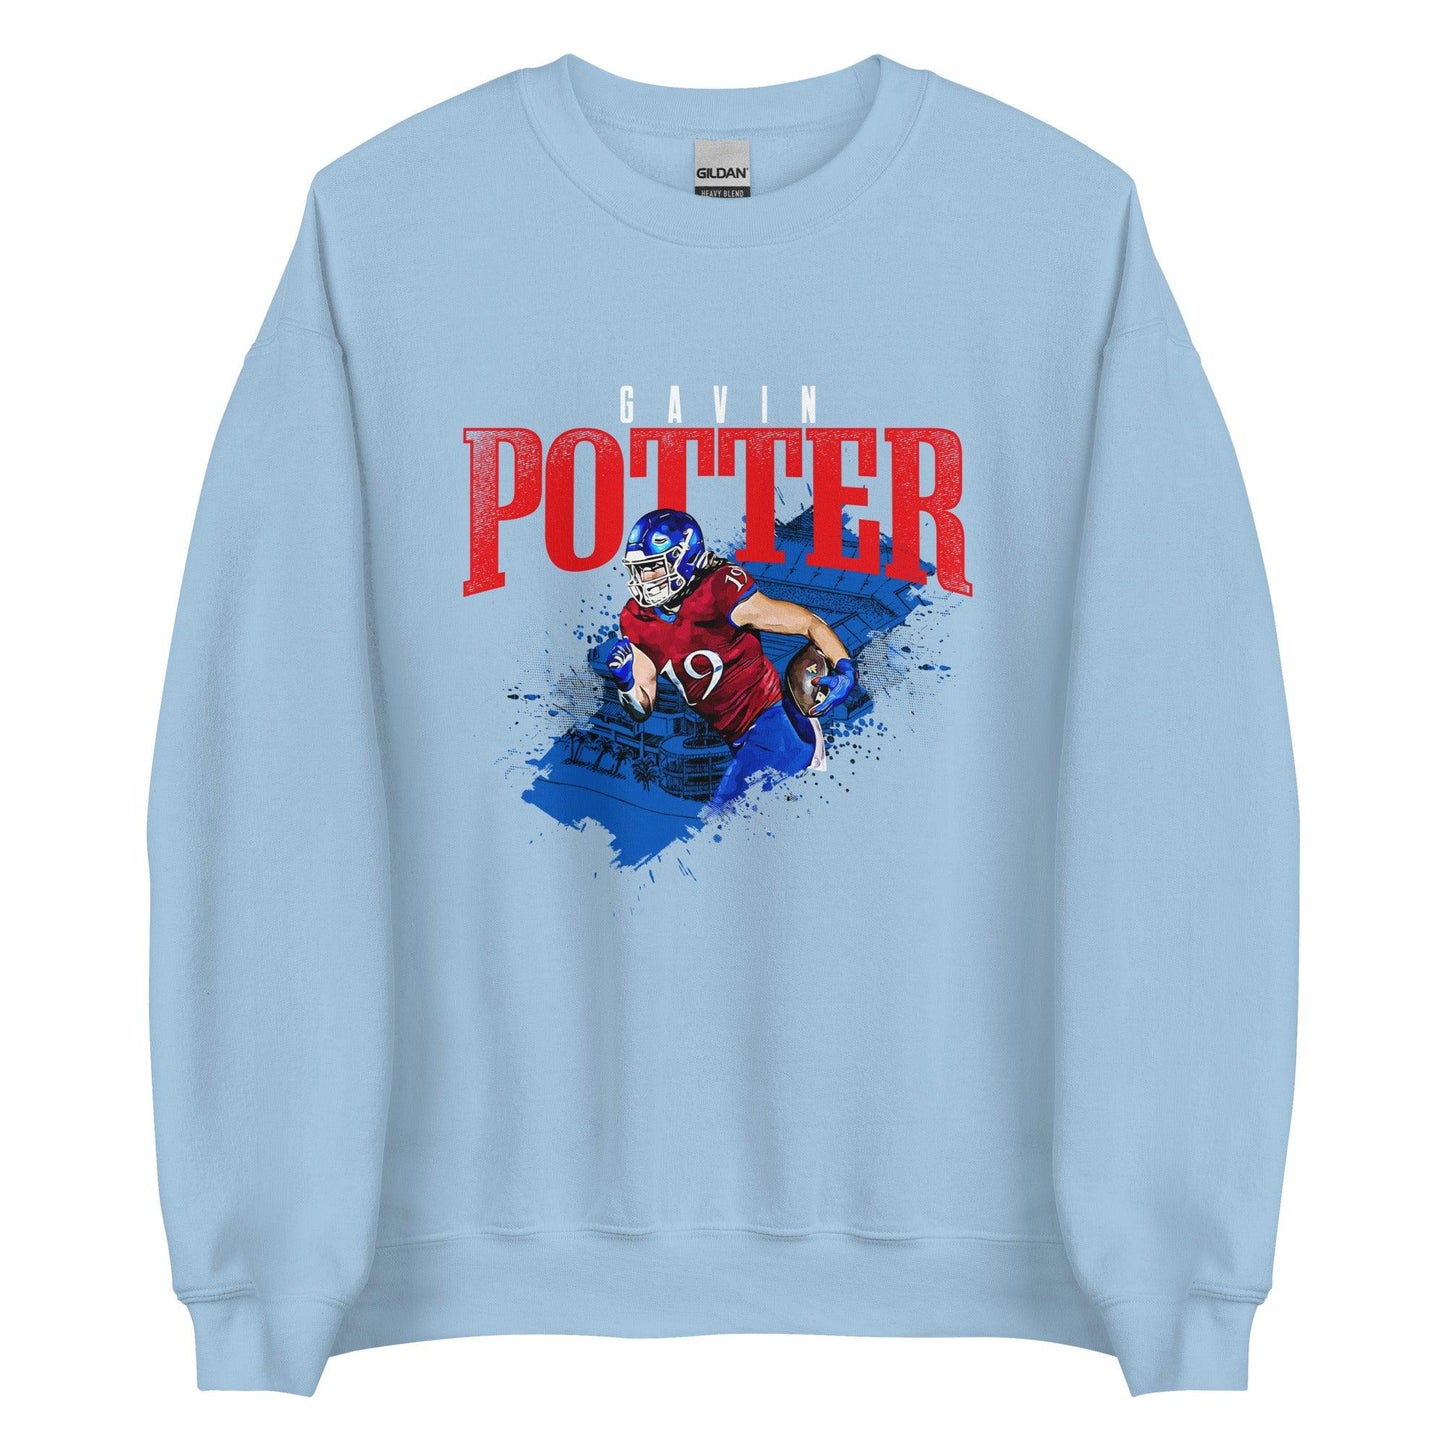 Gavin Potter "Gametime" Sweatshirt - Fan Arch